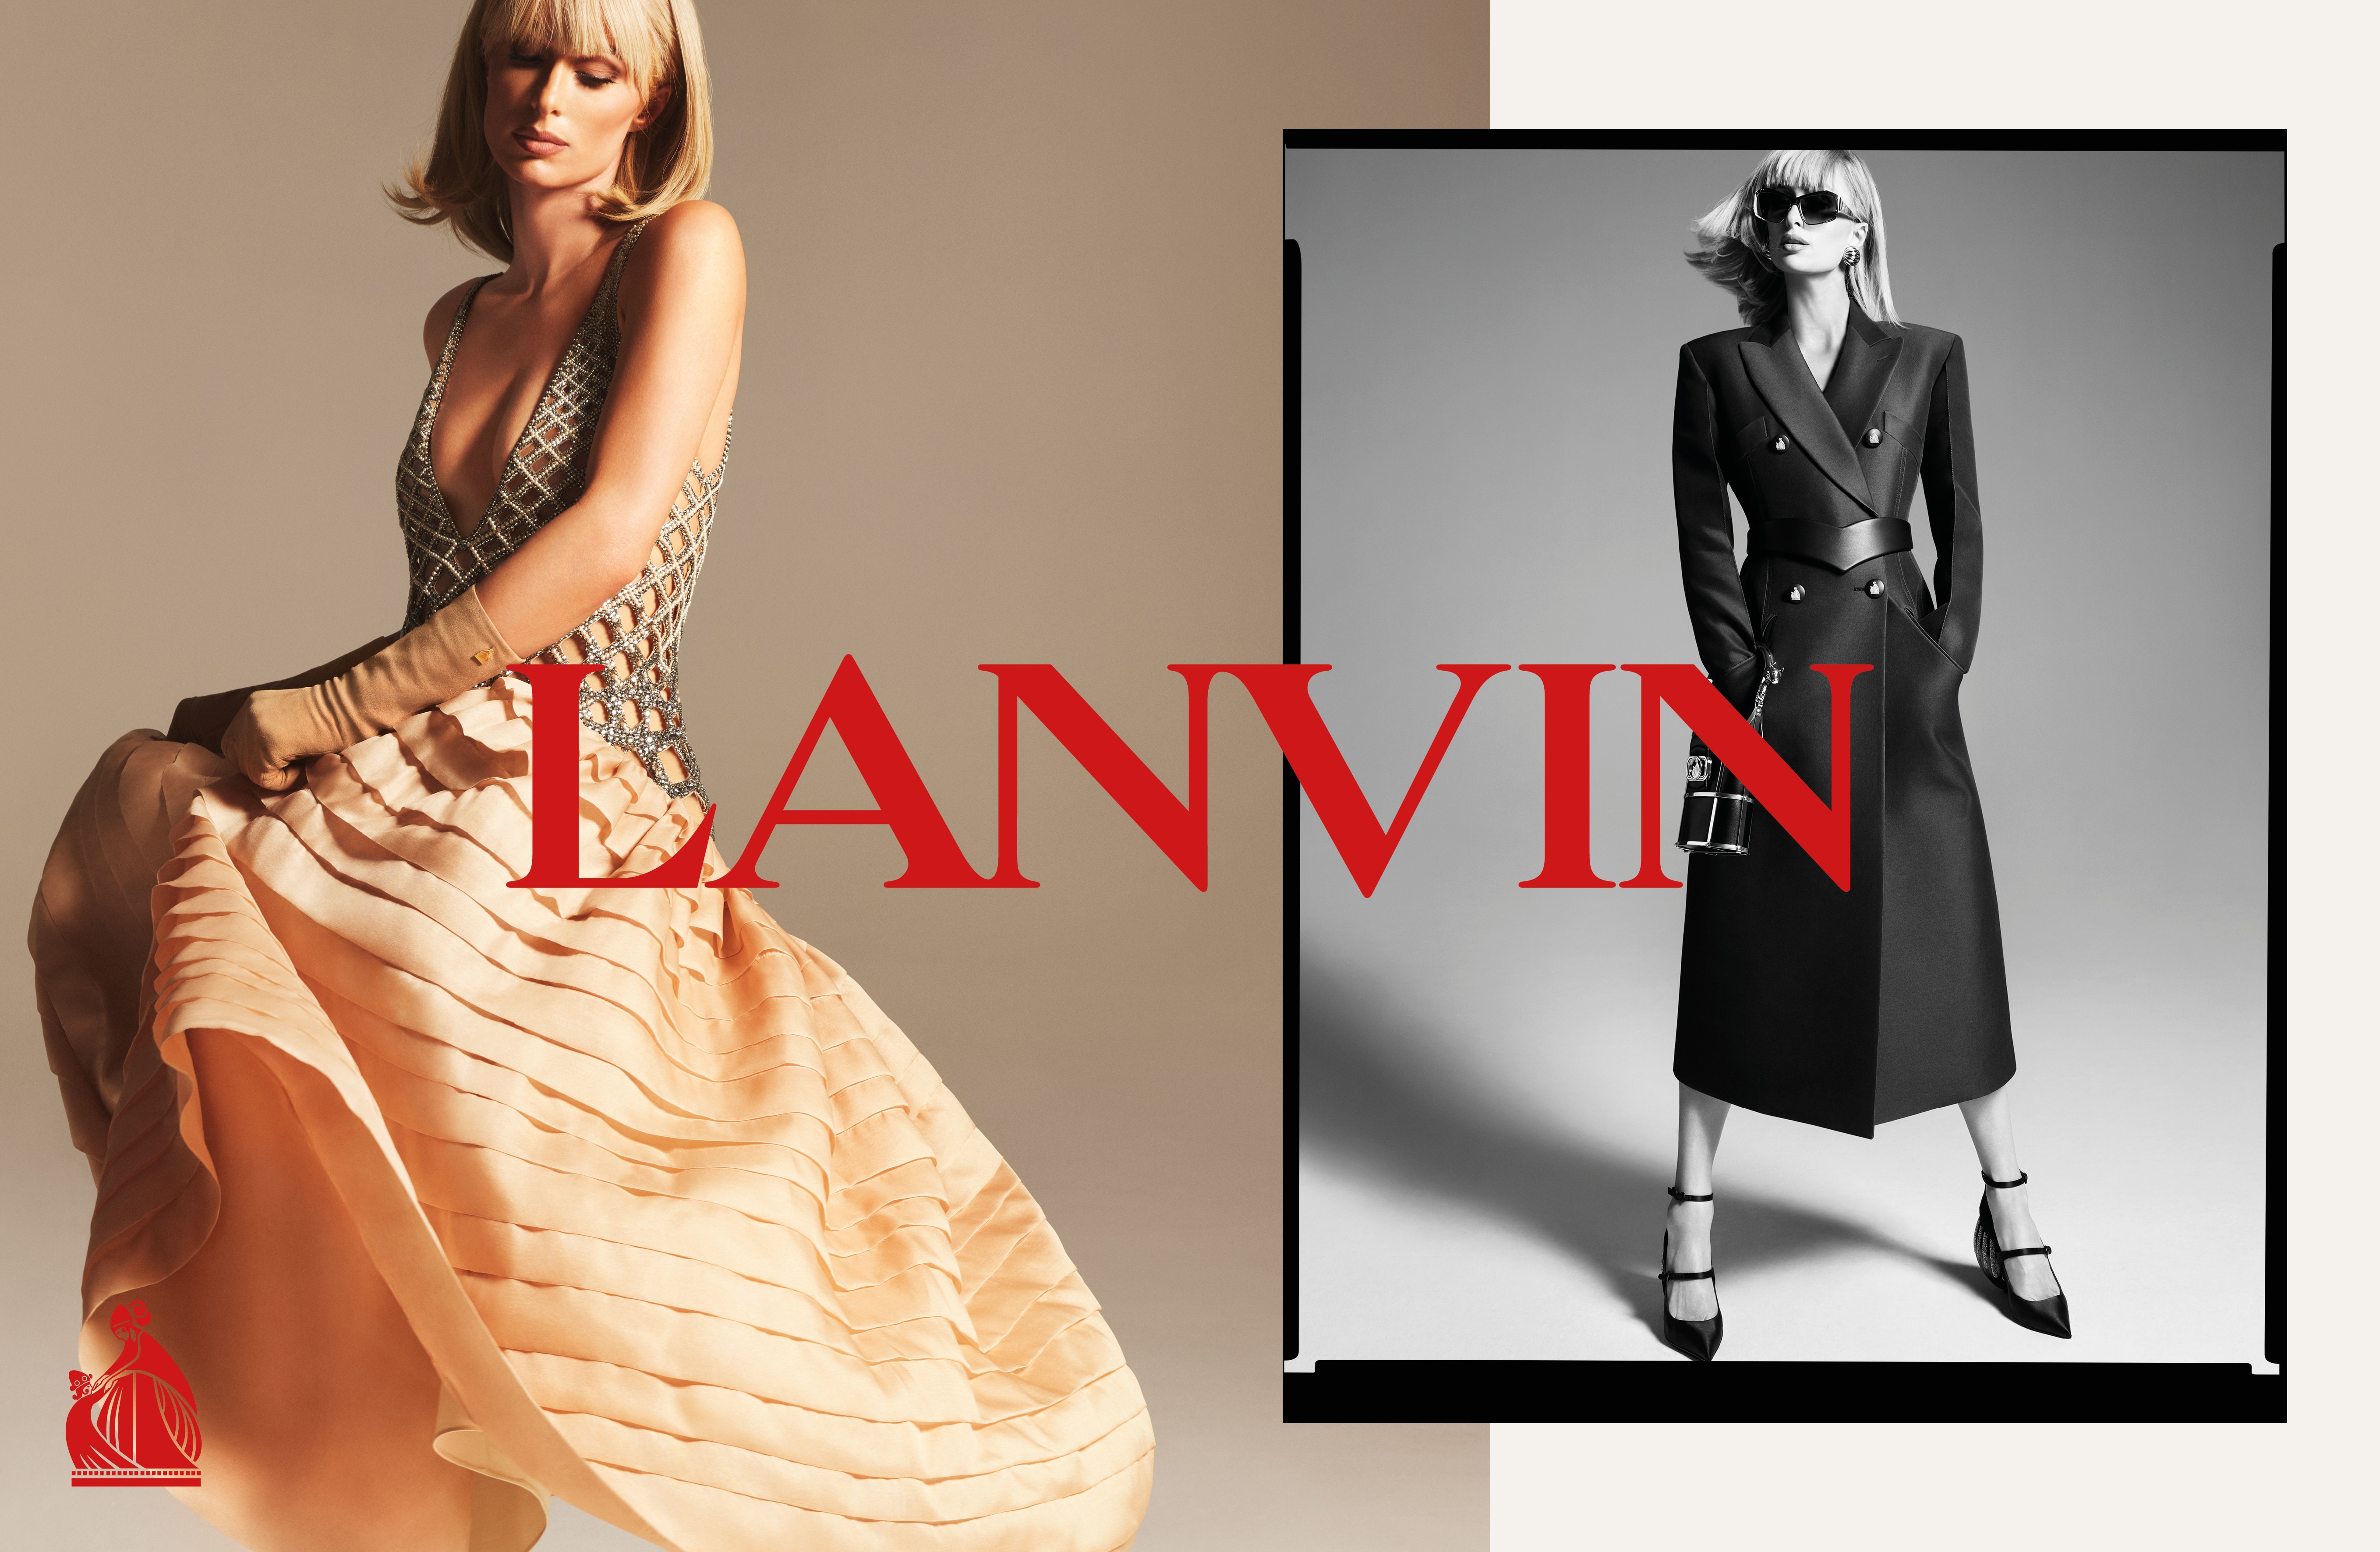 Paris Hilton, en "robe de style" et en manteau ceinturé, pour la campagne printemps-été 2021 de Lanvin, photographiée par Mert & Marcus